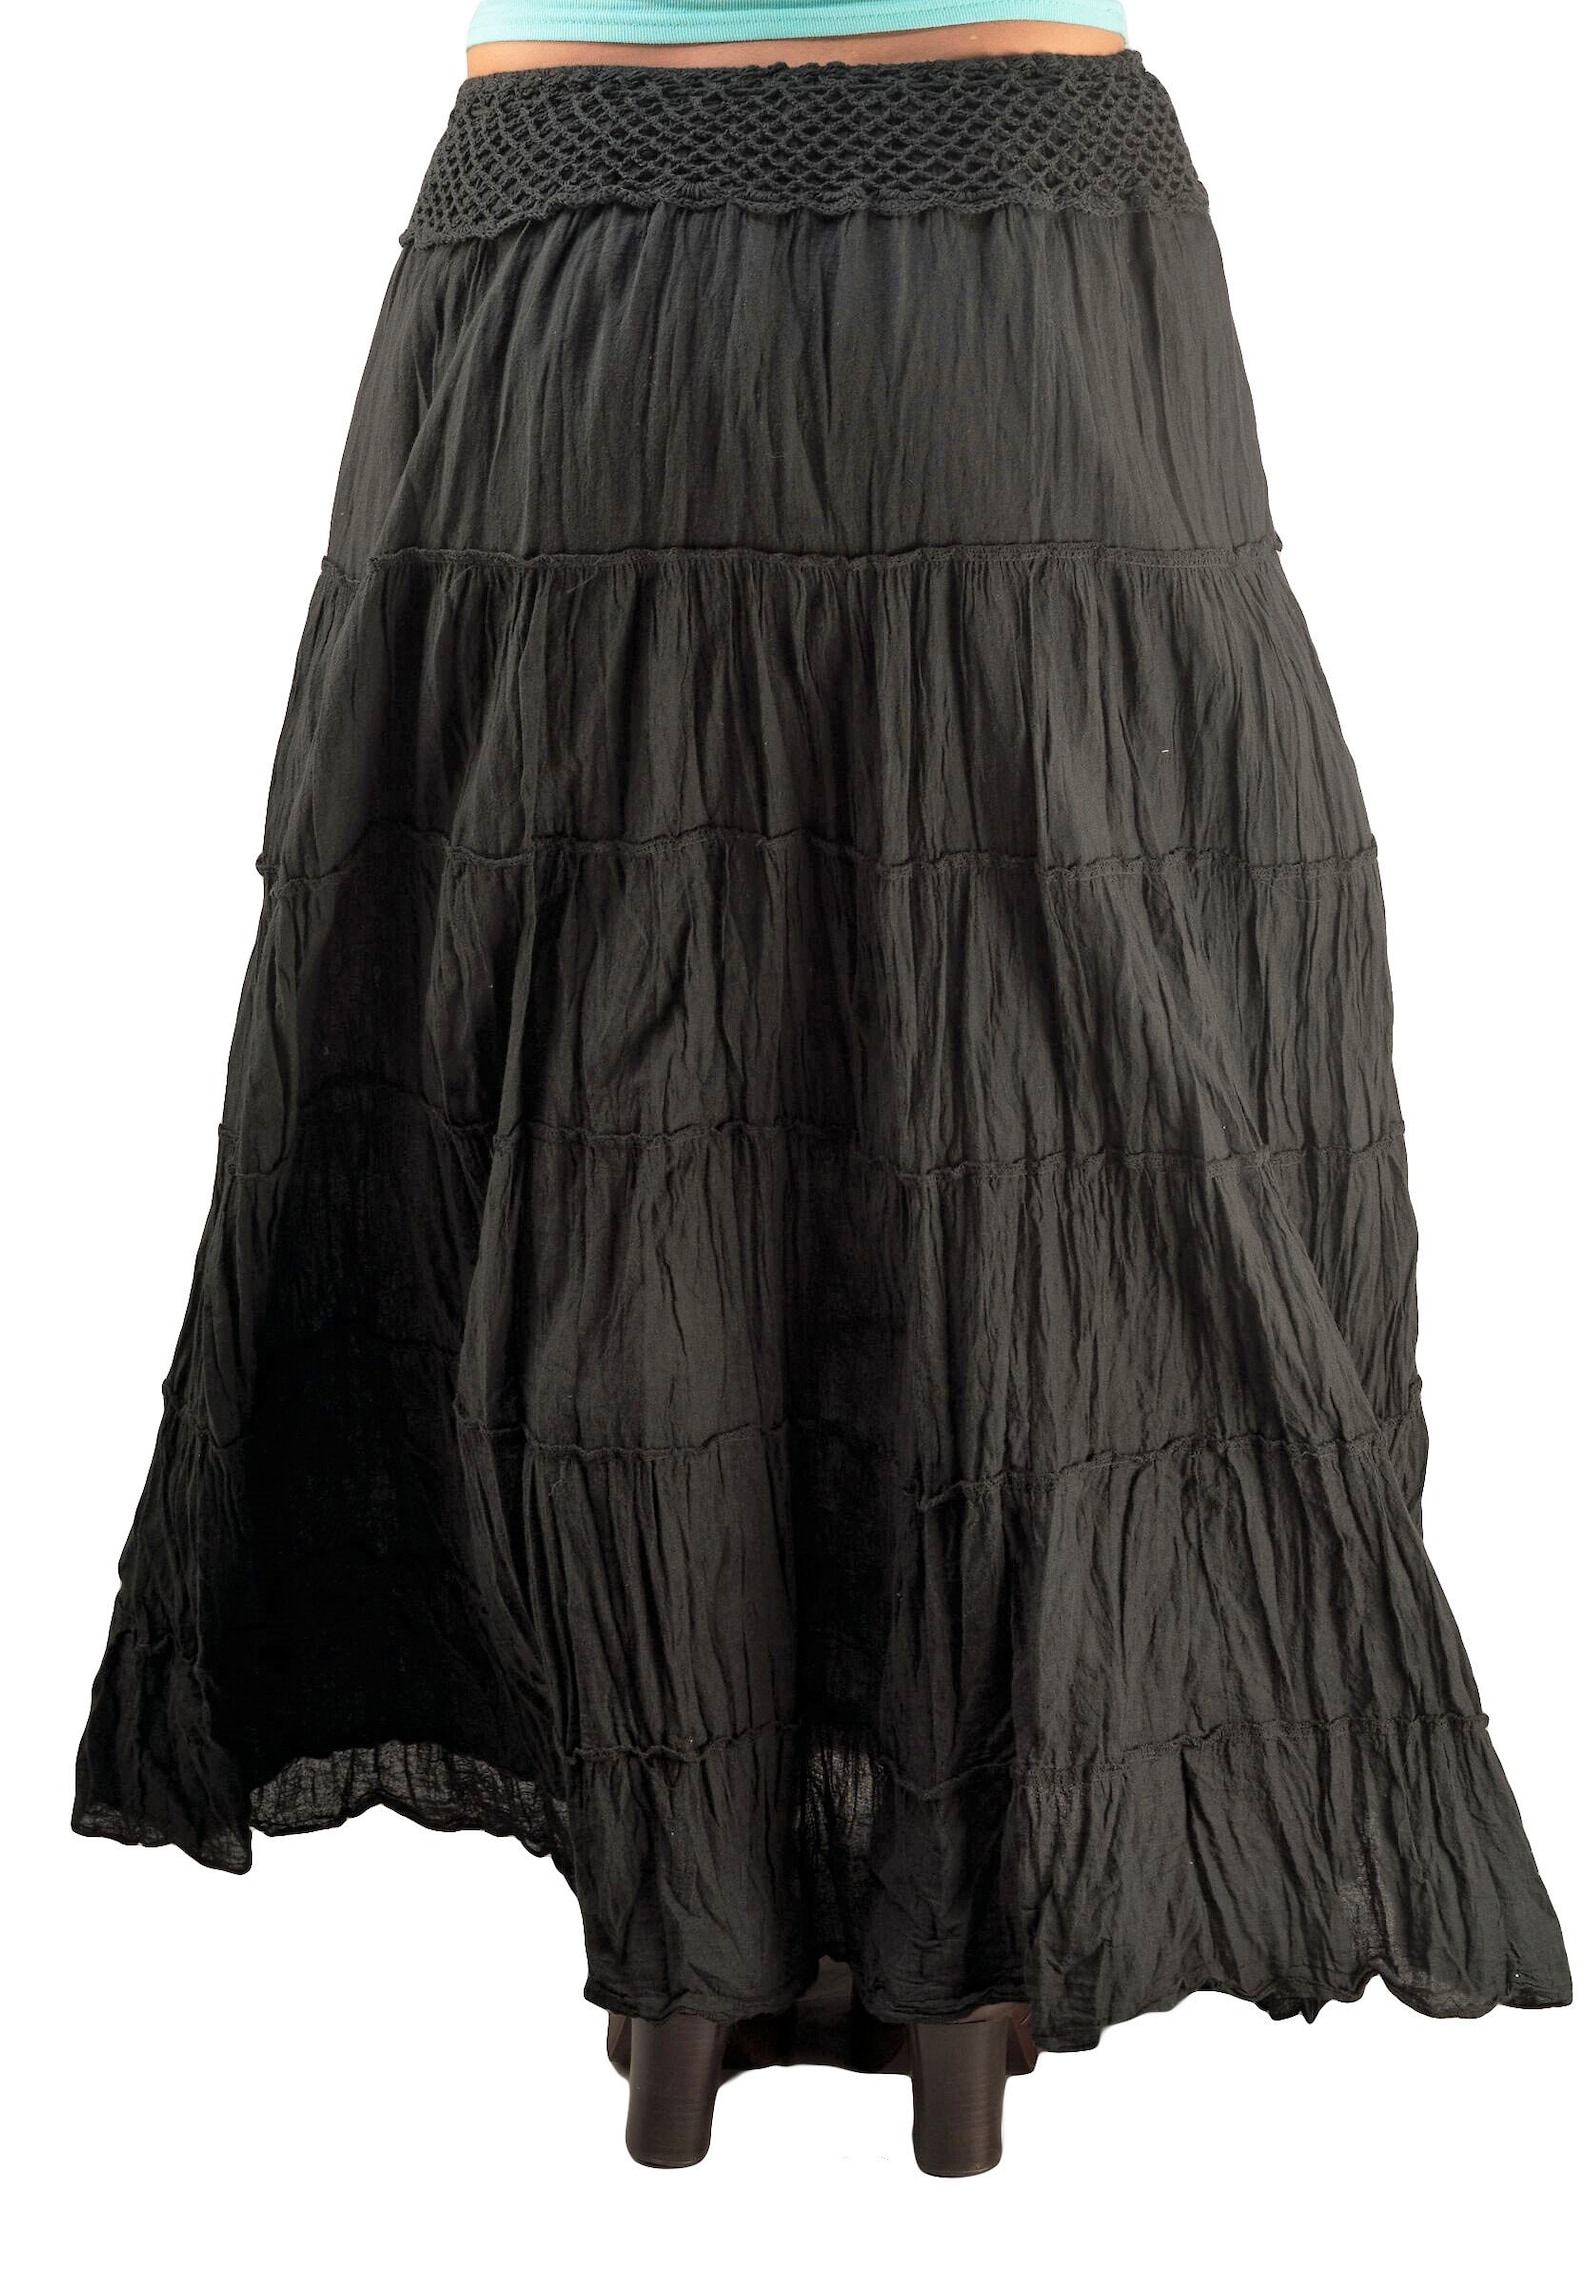 Black Gypsy Skirts Cotton Tiered Skirts Boho Skirts - Etsy